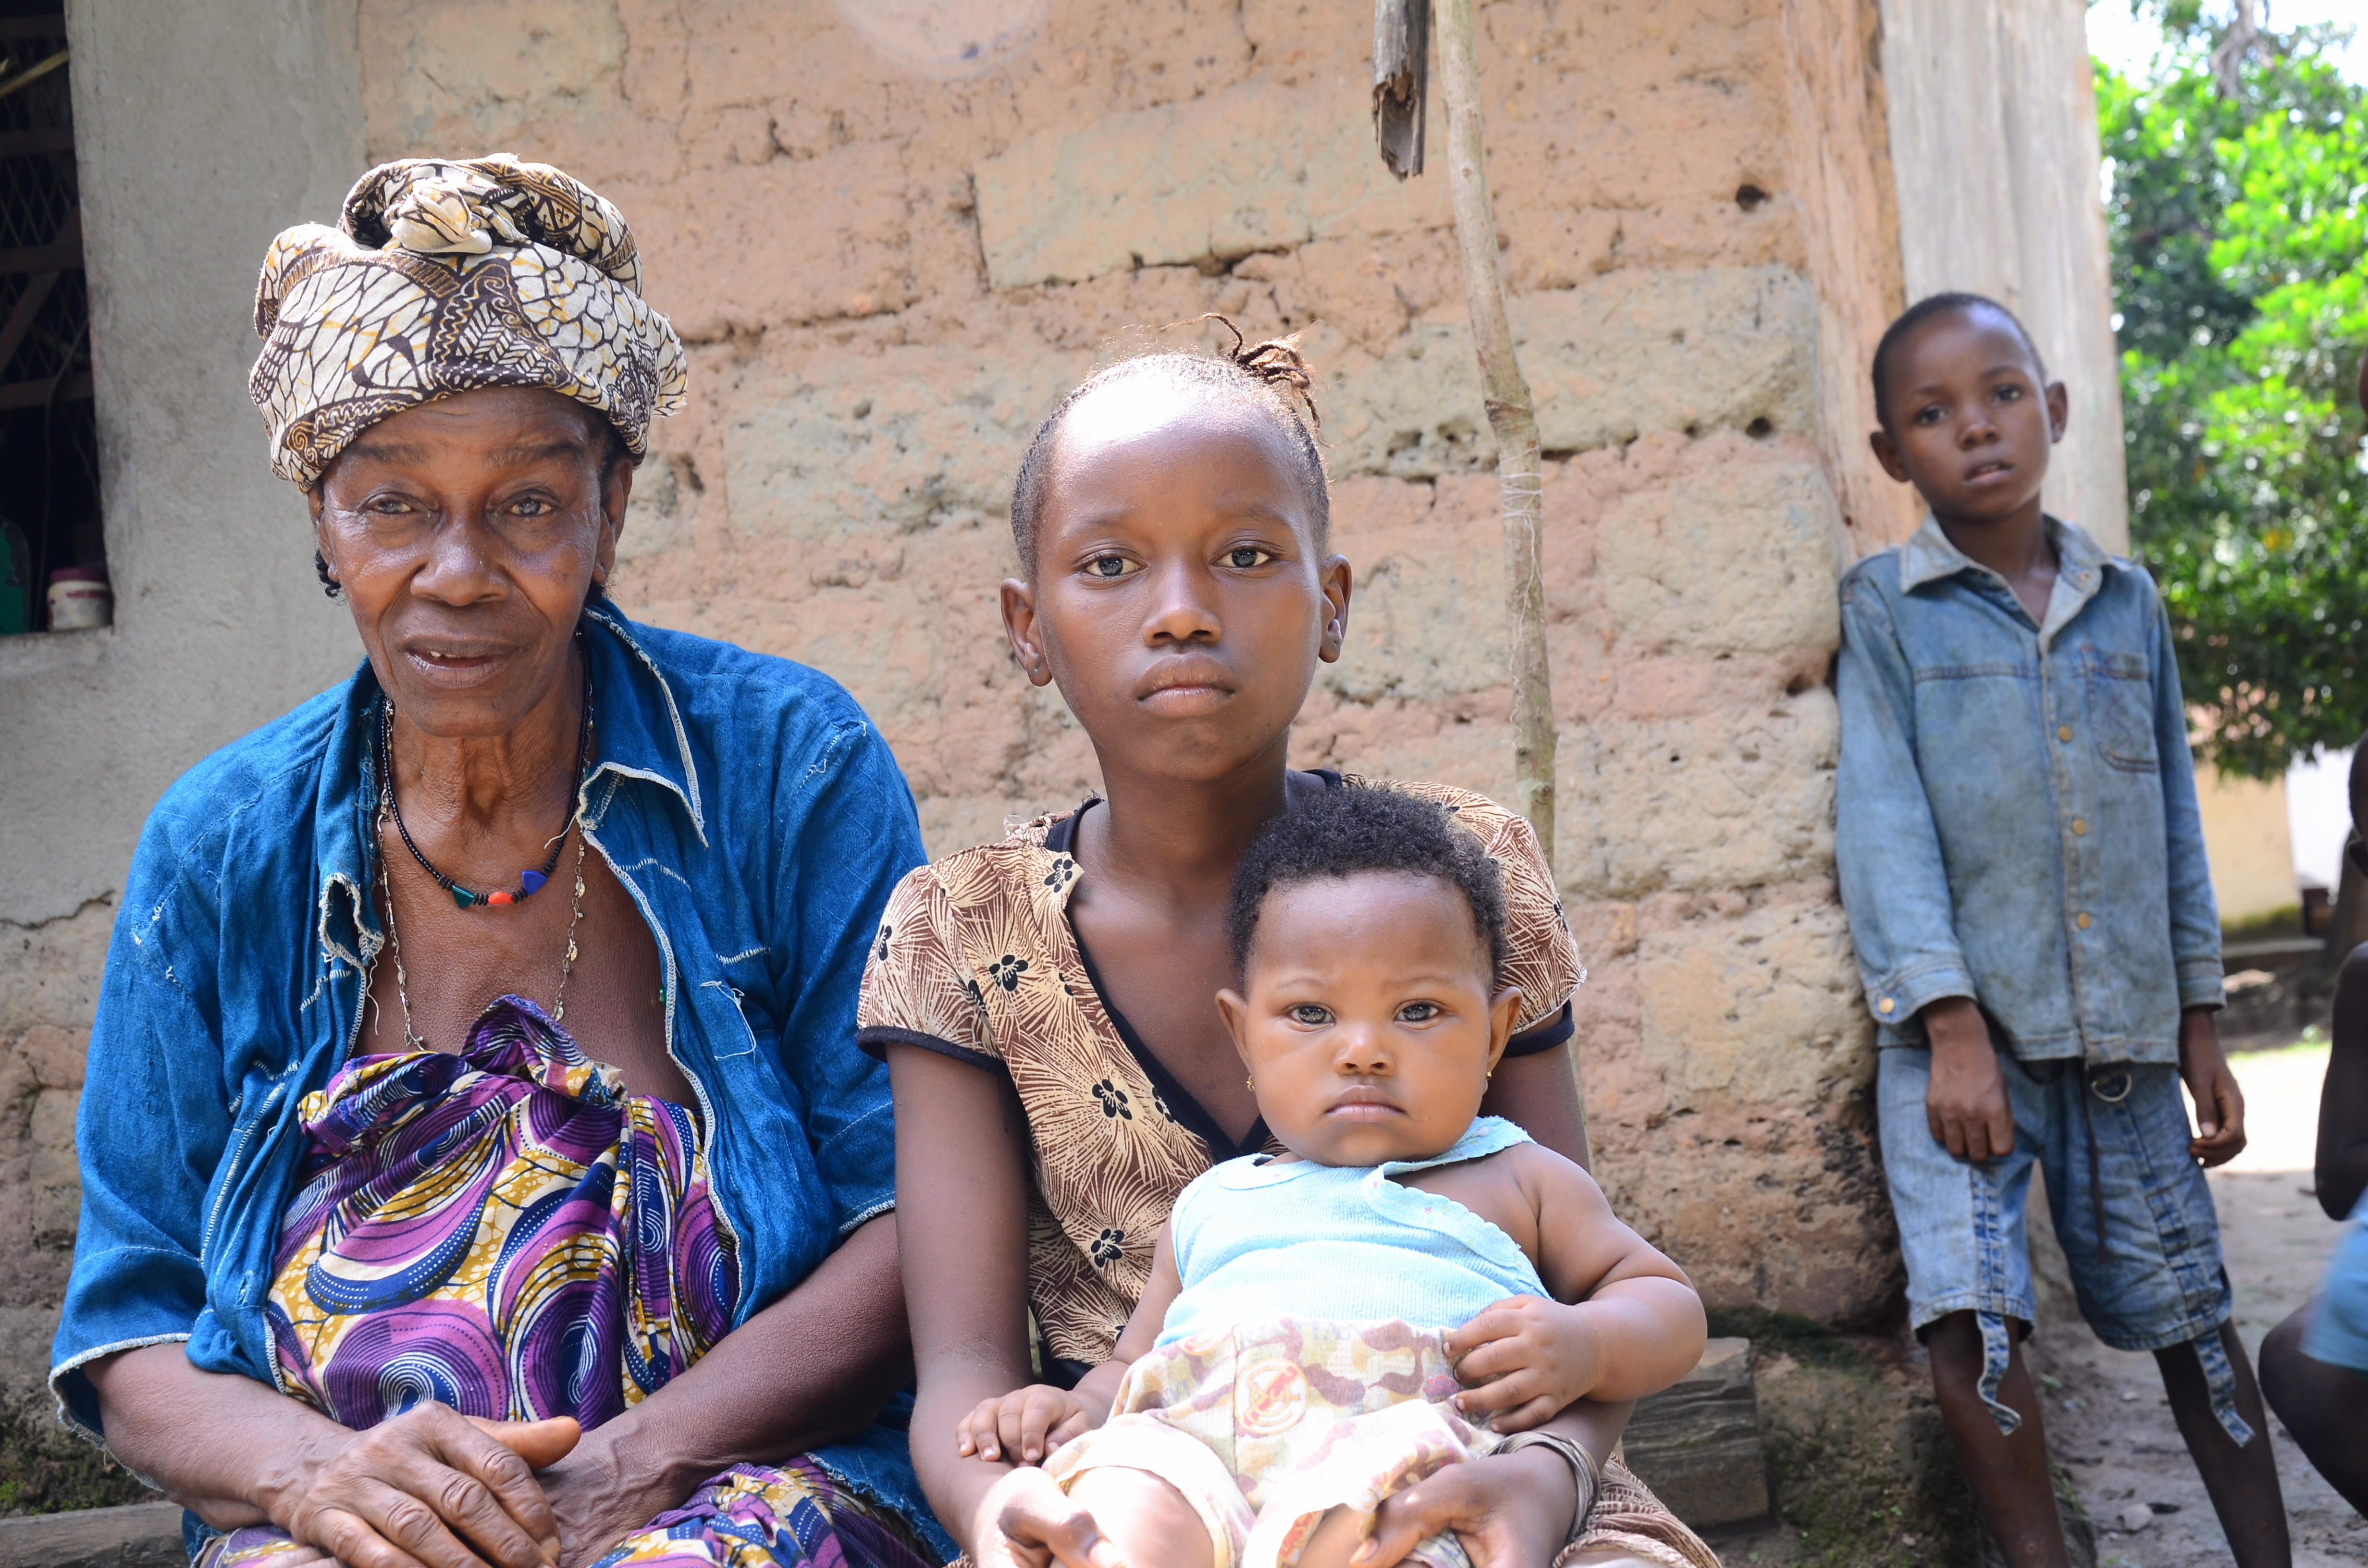 Korona-pandemien kan ha massive konsekvenser for barn sør for Sahara. Foto: Claire Ladavicius